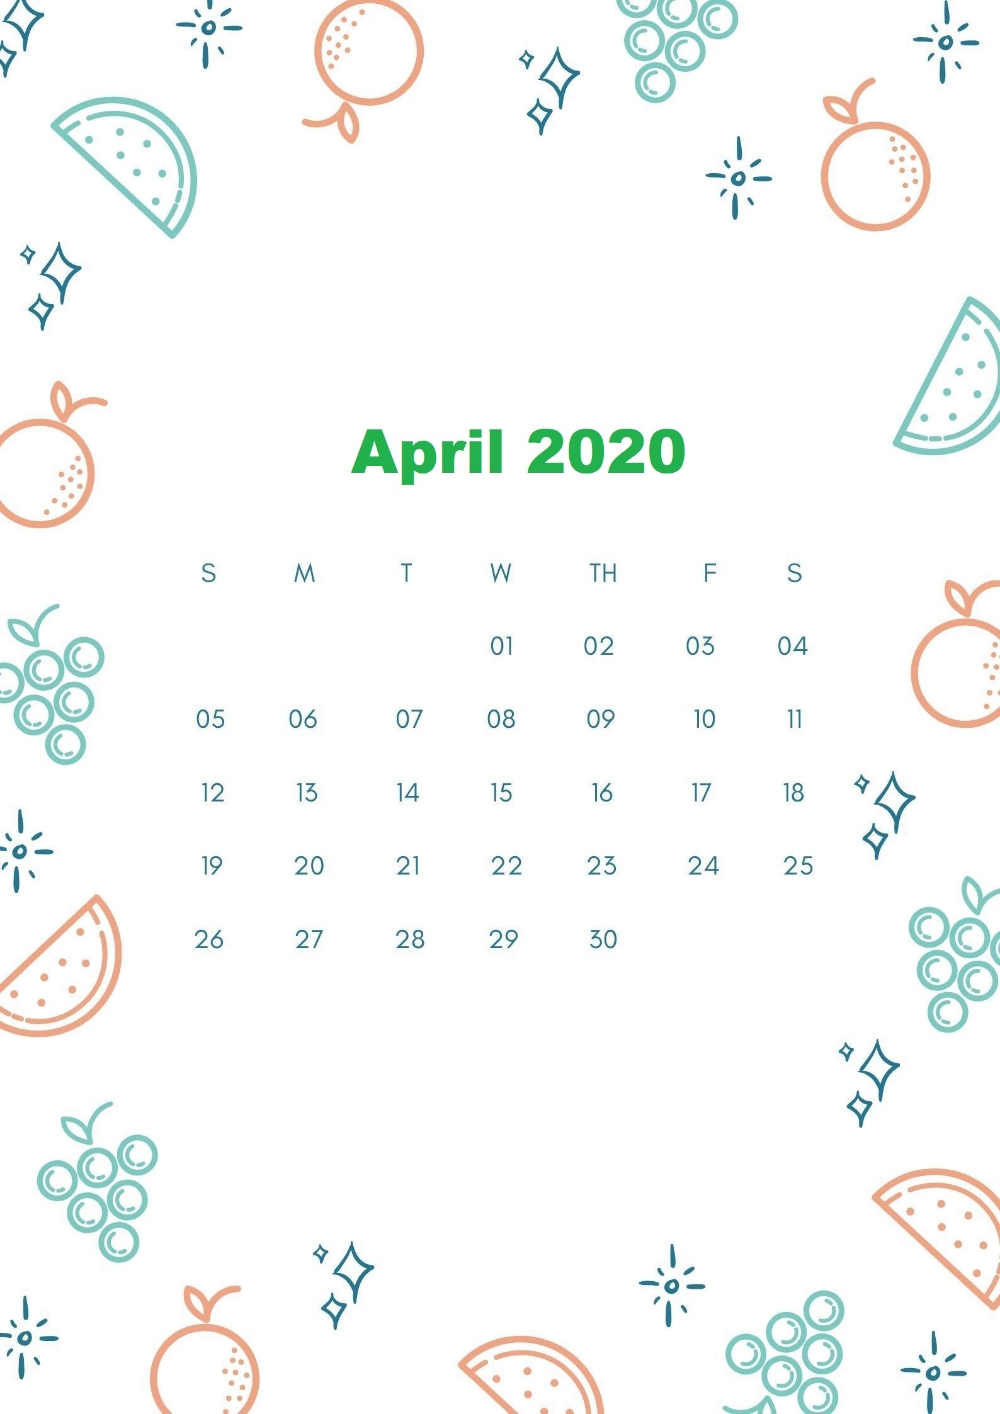 Schedule Your Activities | Free Printable Calendar